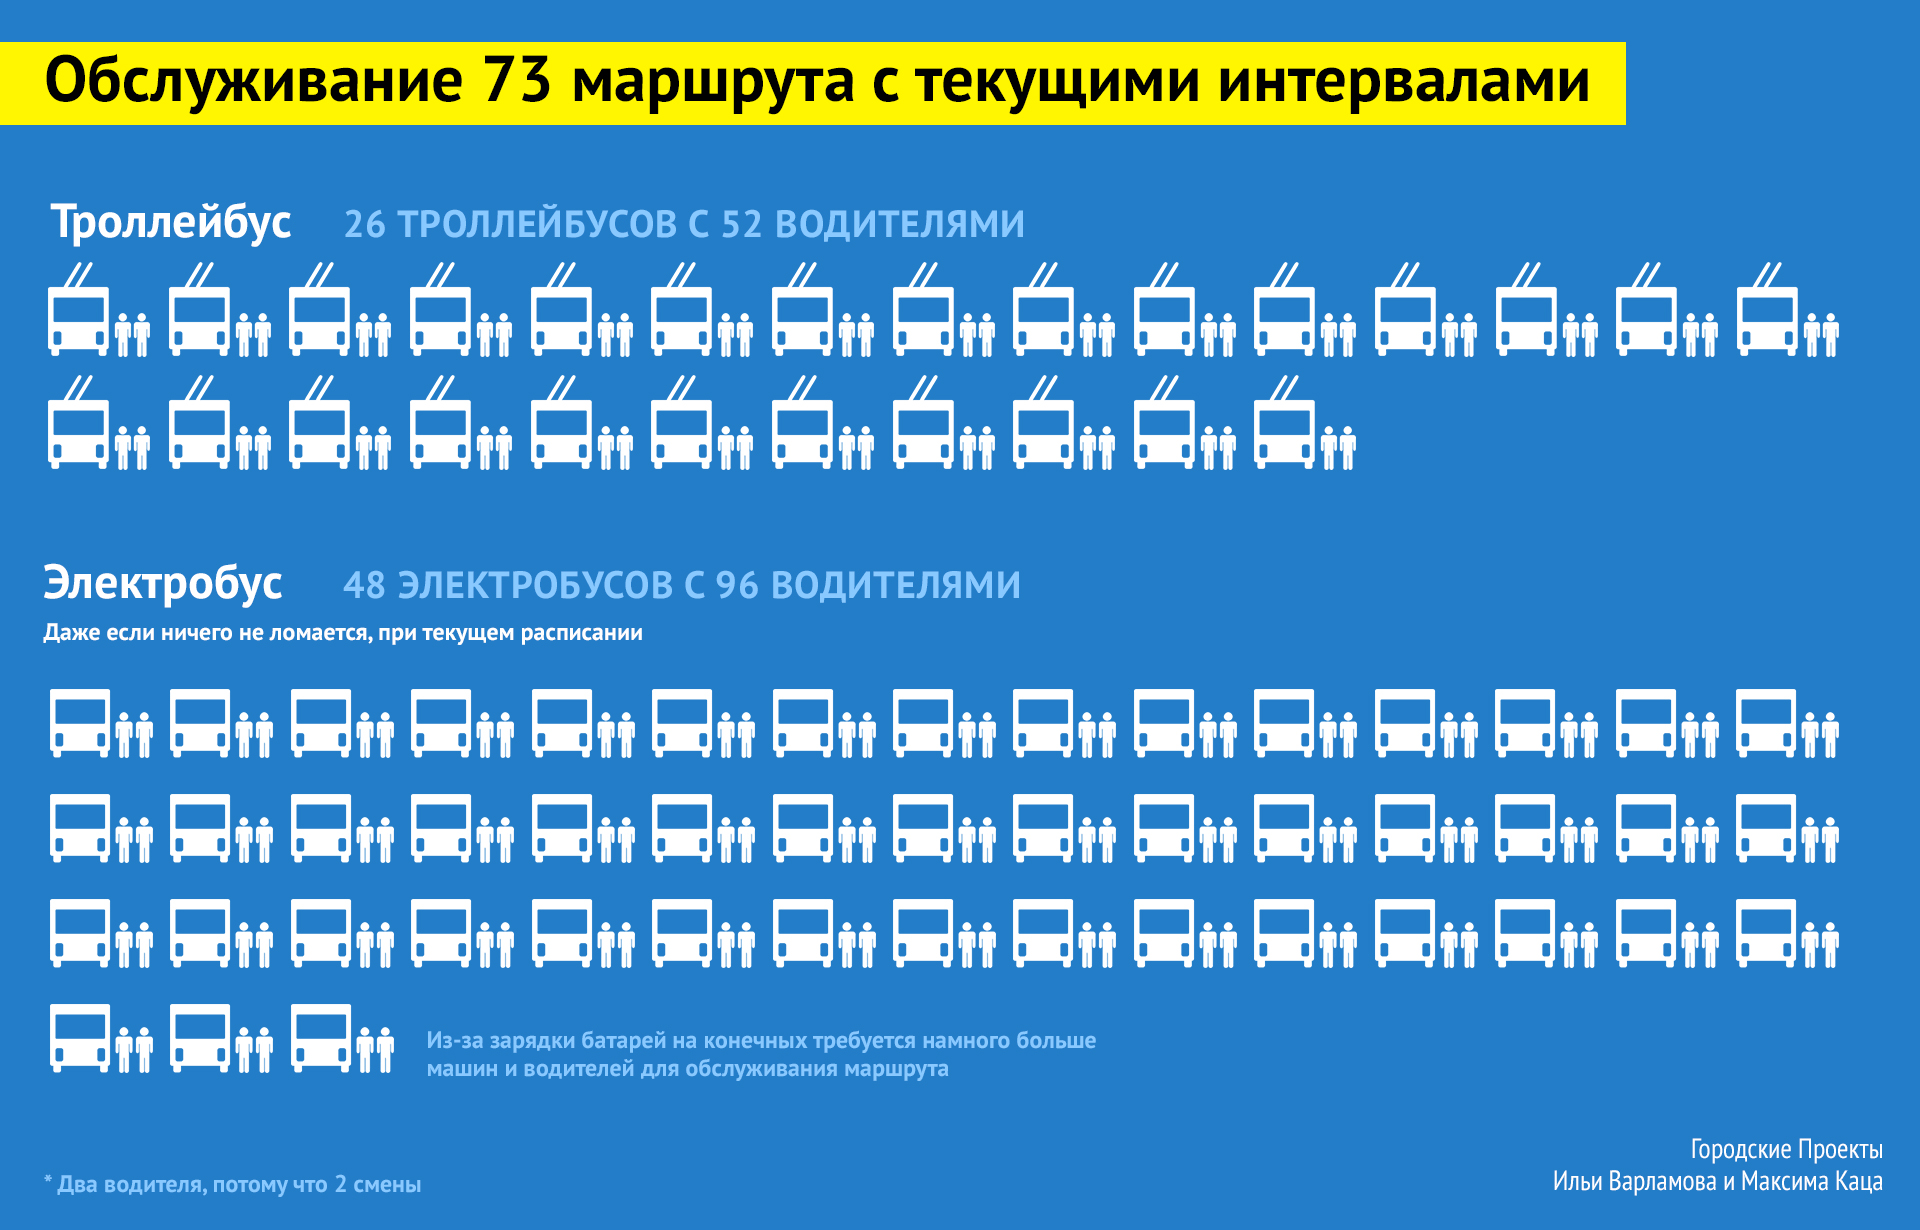 Что не так с электробусами? электробусов, электробусы, Москве, минут, троллейбусов, слишком, которые, проводов, маршрутов, транспорта, конечных, использовать, технологии, электробус, странах, происходит, маршруты, потом, стоит, автобусов